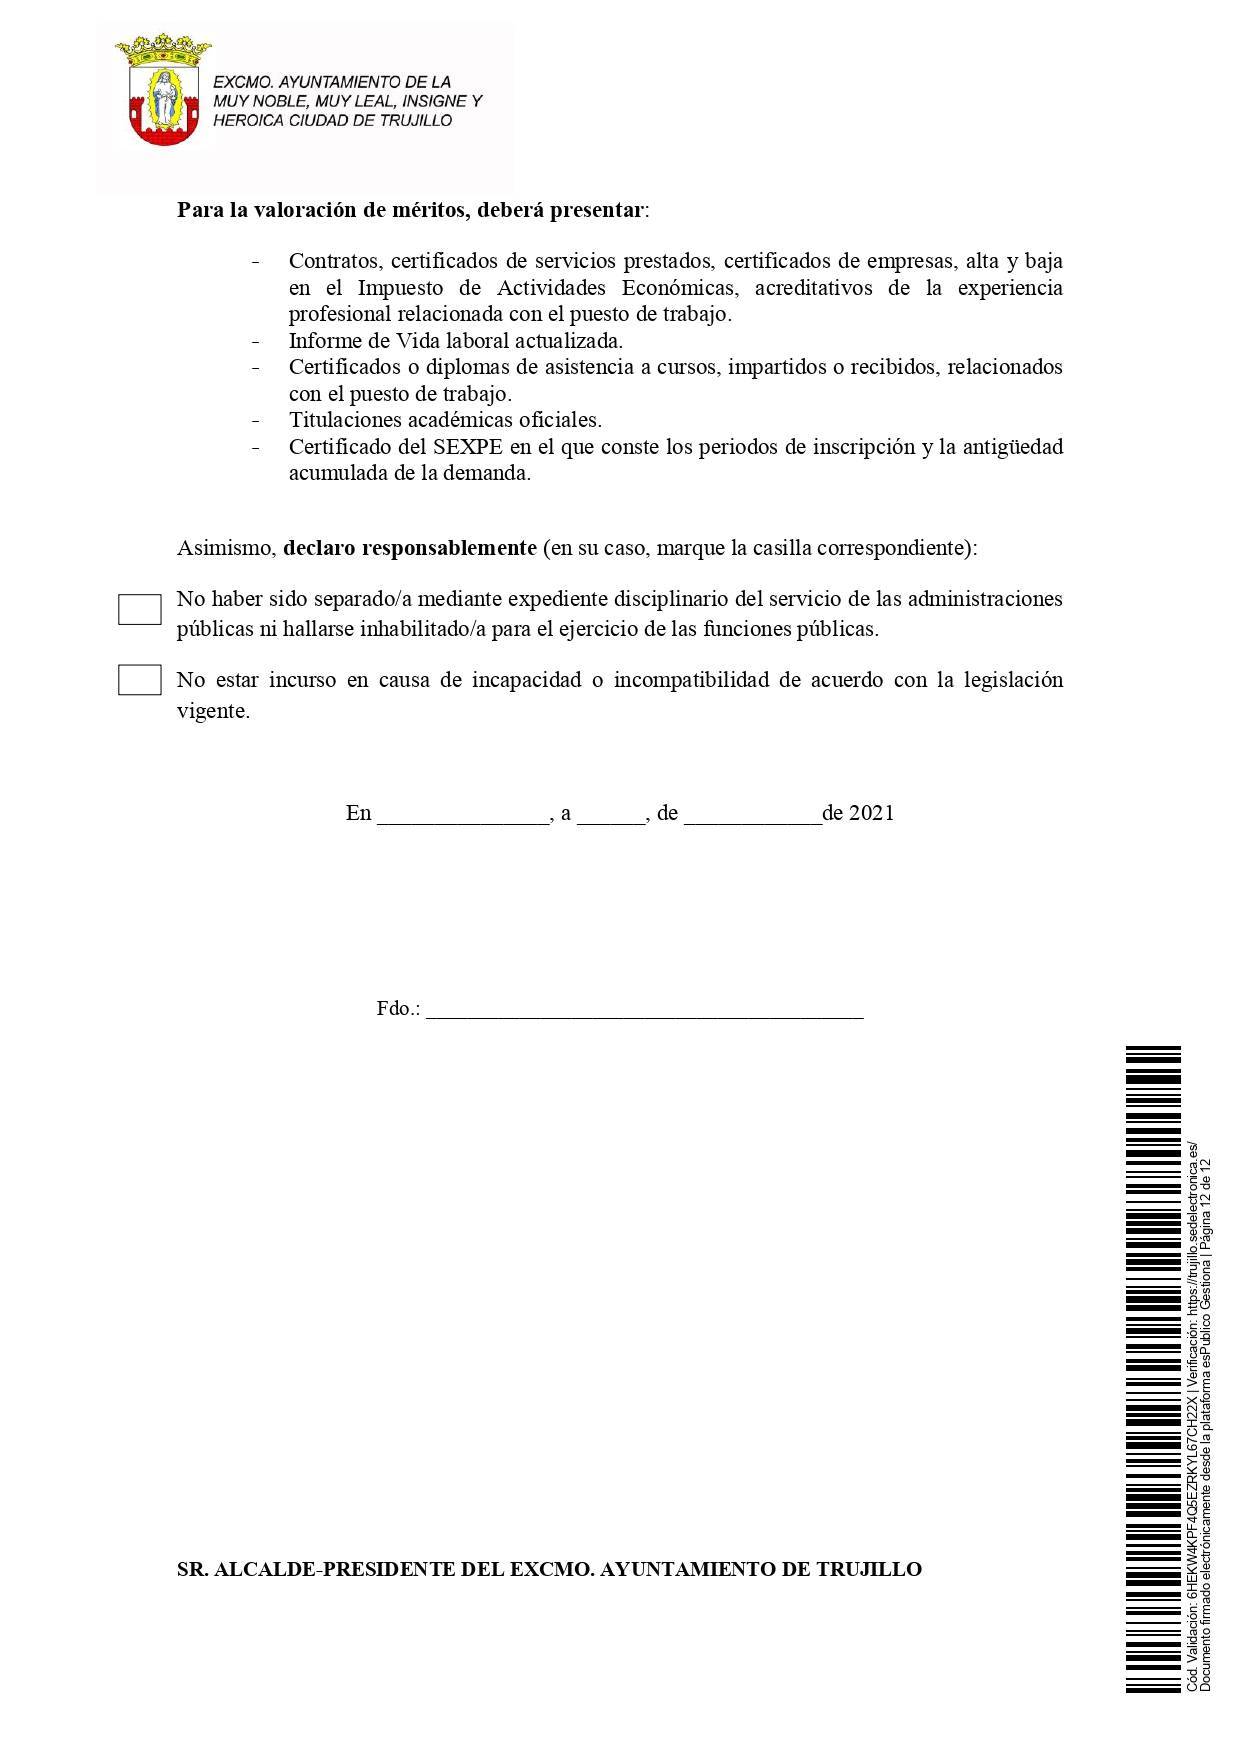 2 administrativos (2021) - Trujillo (Cáceres) 12